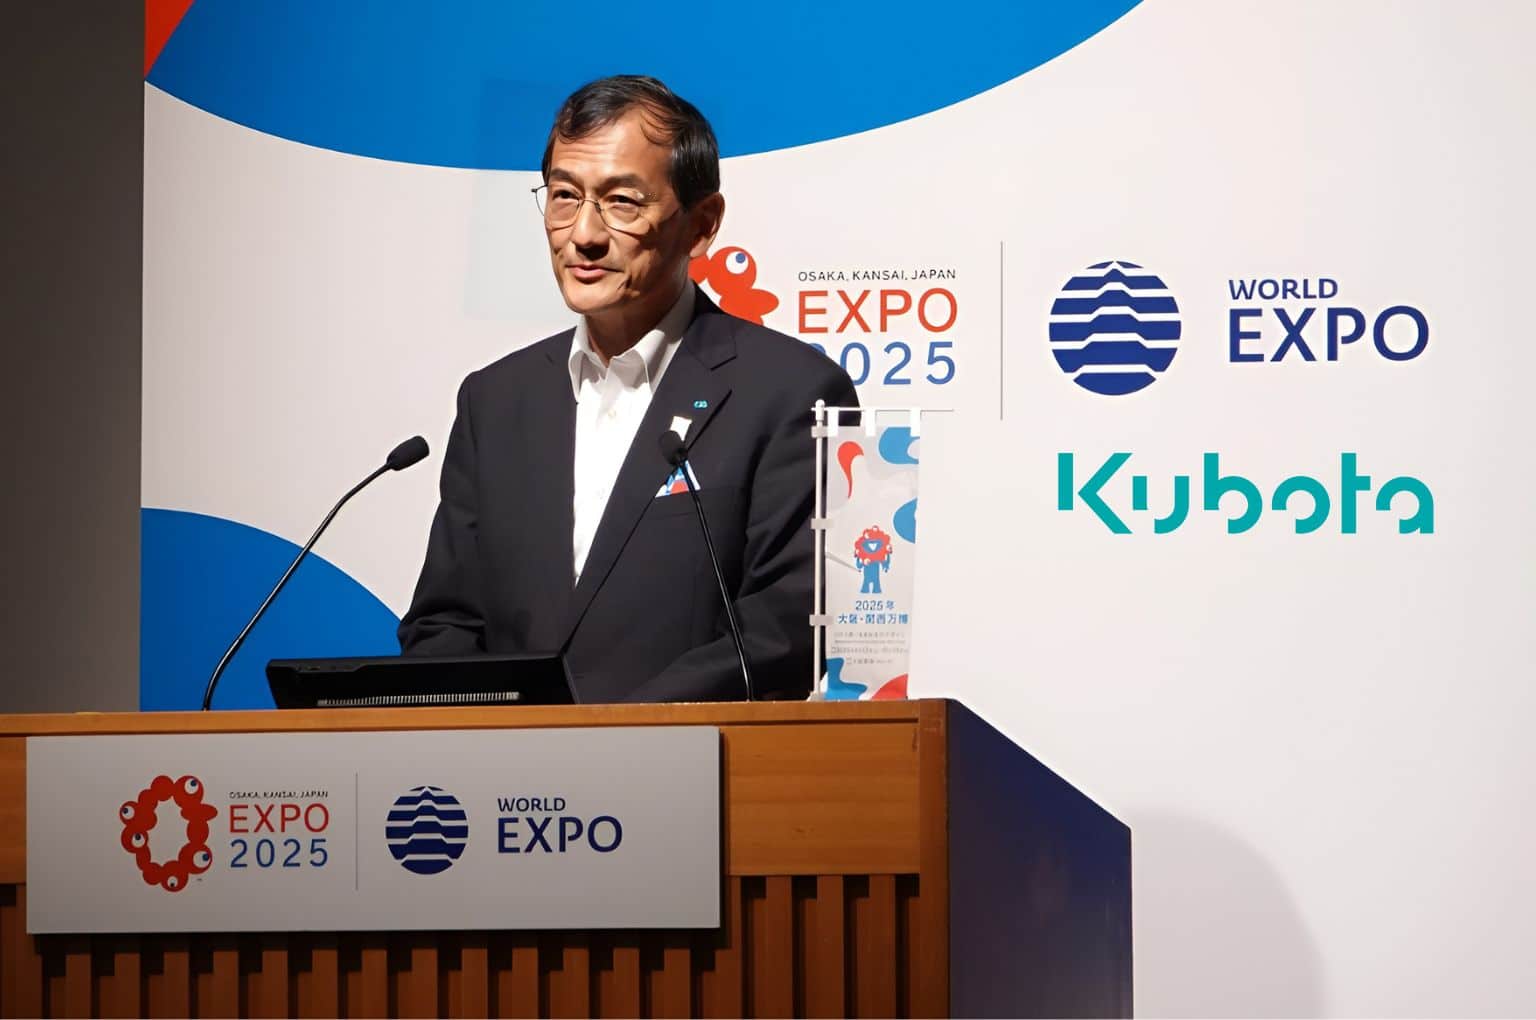 Kubota to sponsor Expo 2025, Osaka, Japan